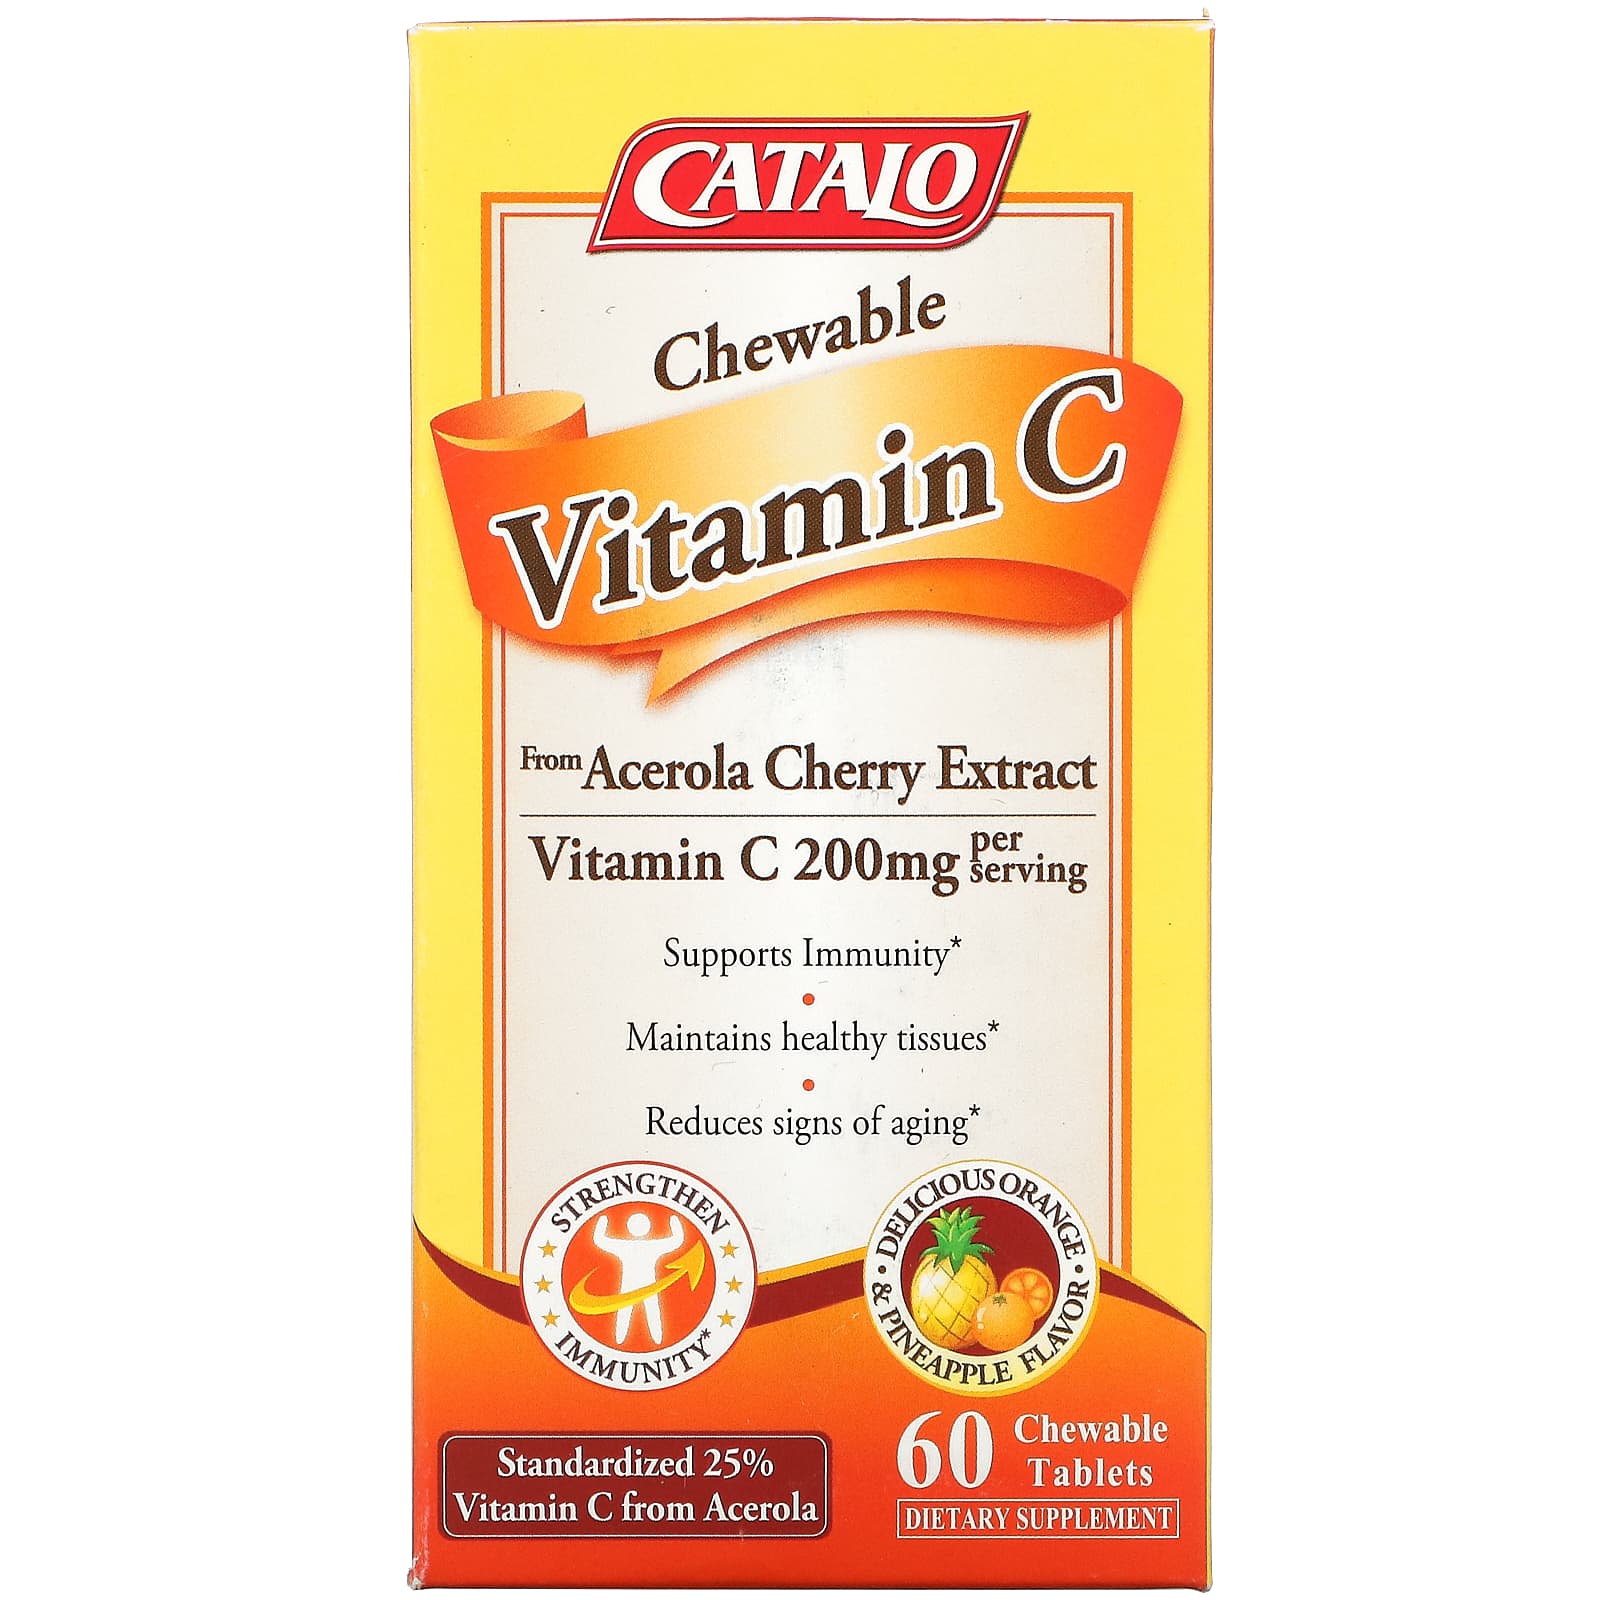 Жевательный Витамин C Catalo Naturals, апельсин и ананас, 60 жевательных таблеток цена и фото